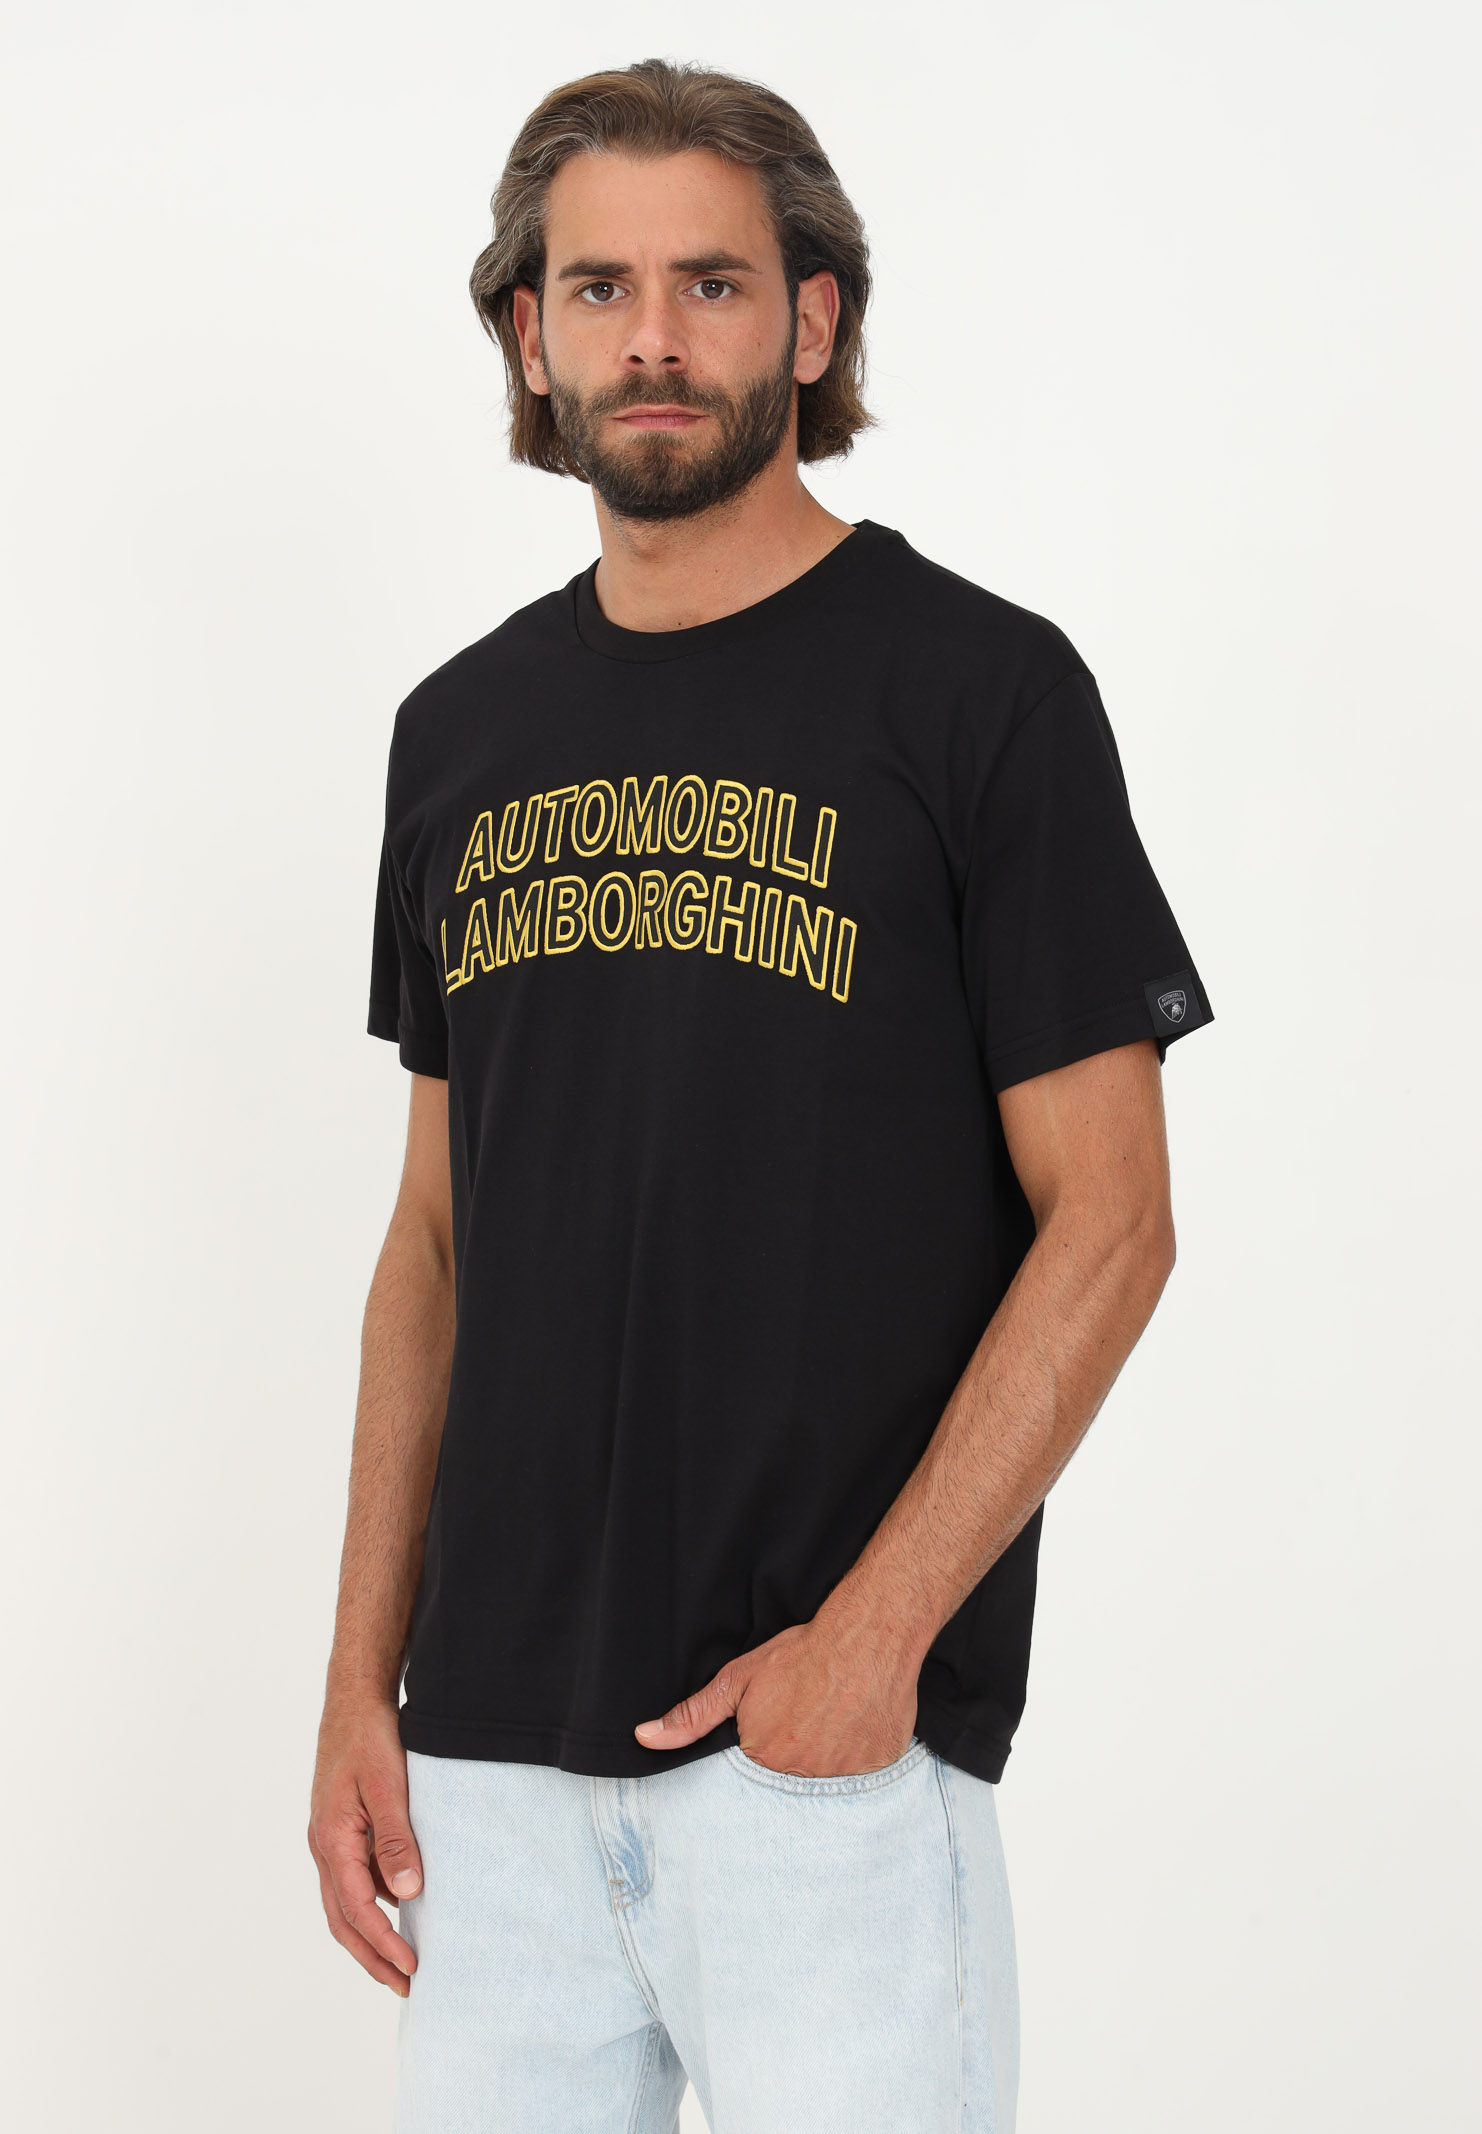 T-shirt Lamborghini nero uomo casual manica corta